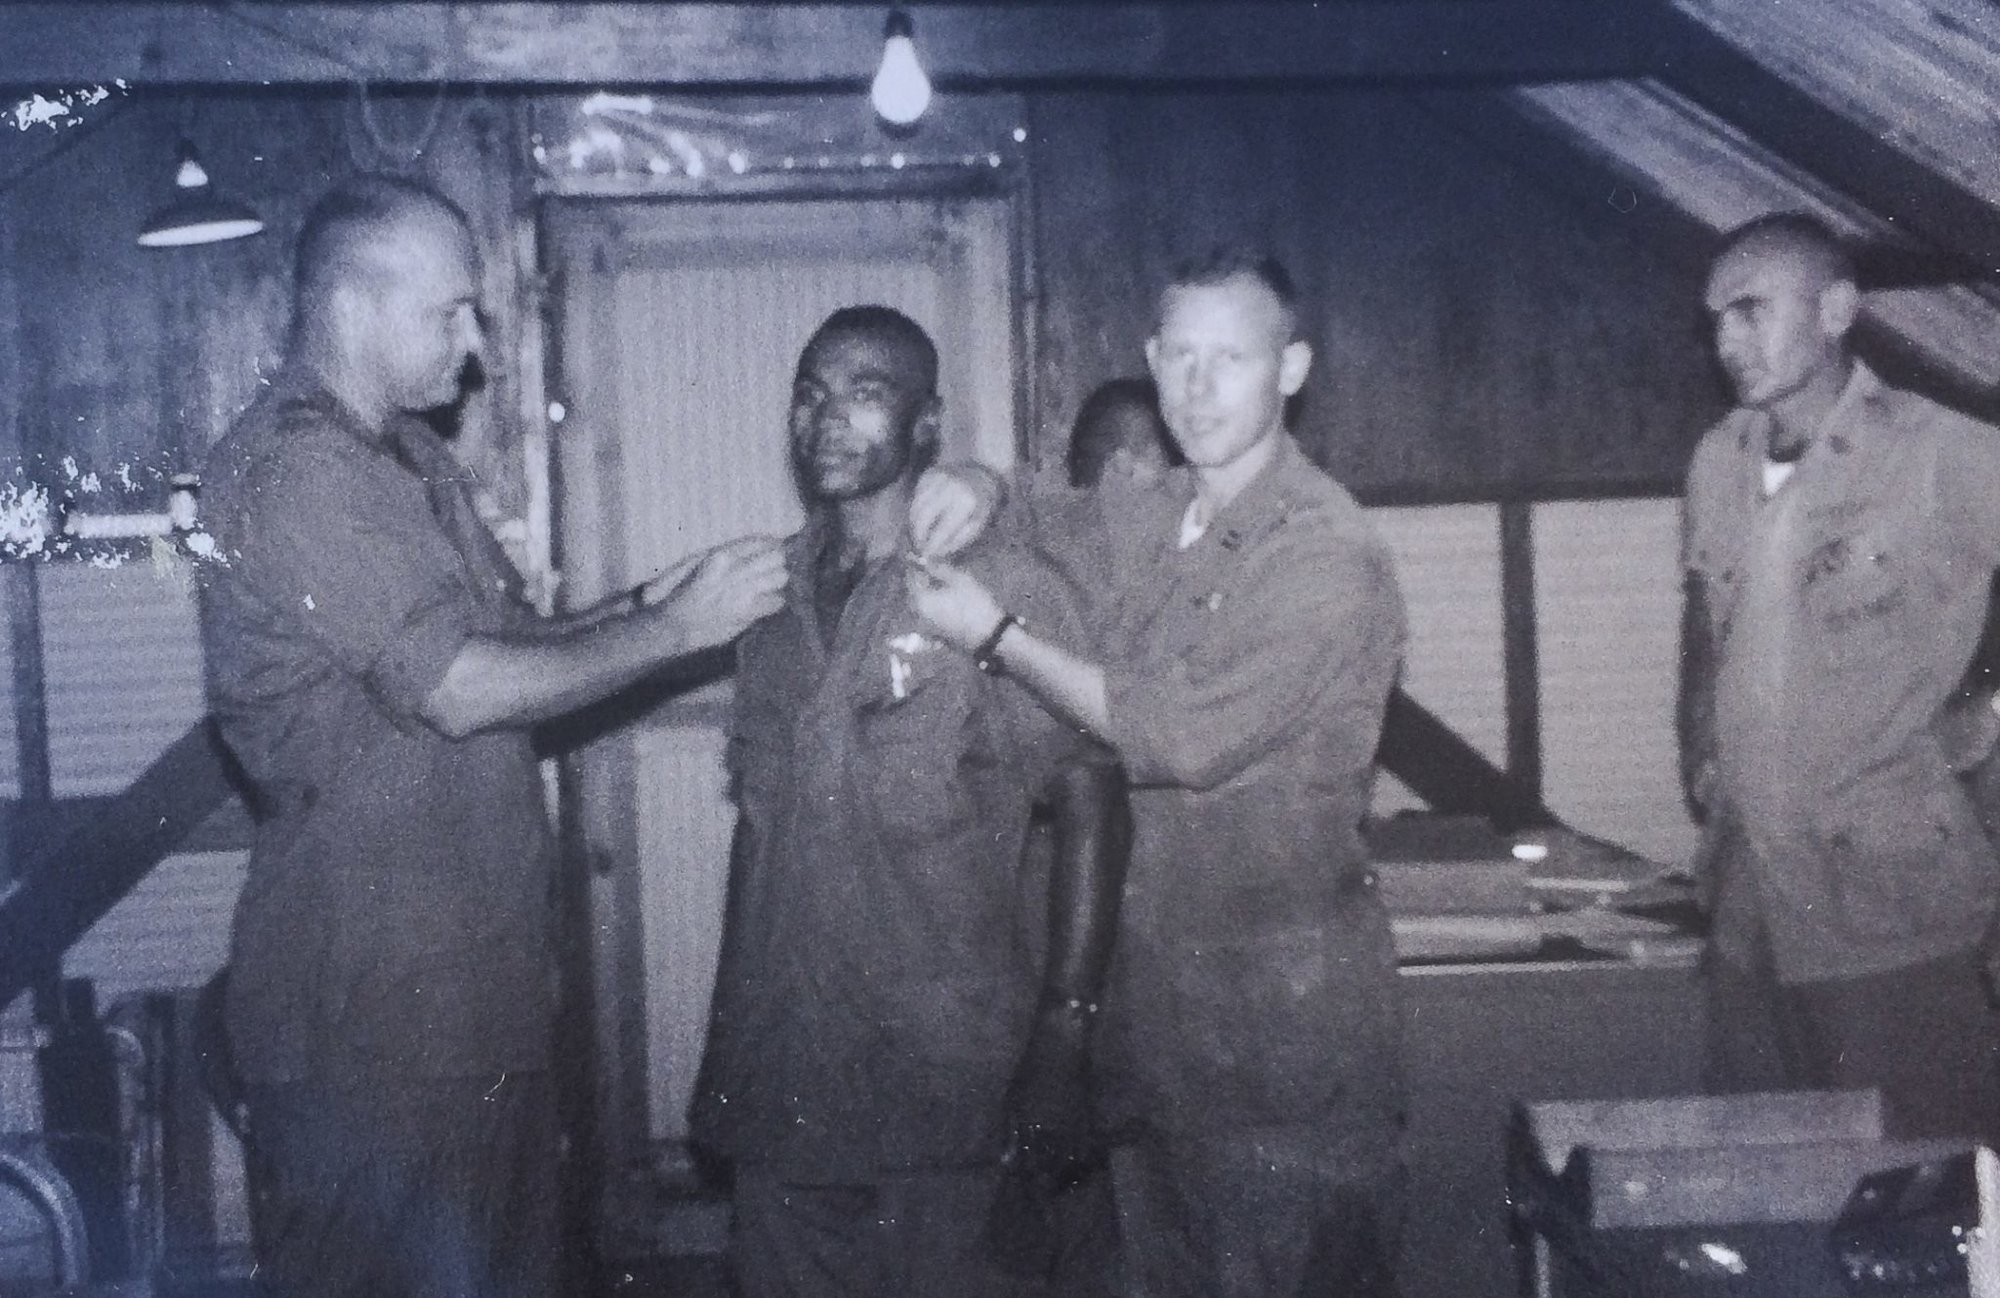 2nd Lt. James Capers Jr. in Vietnam